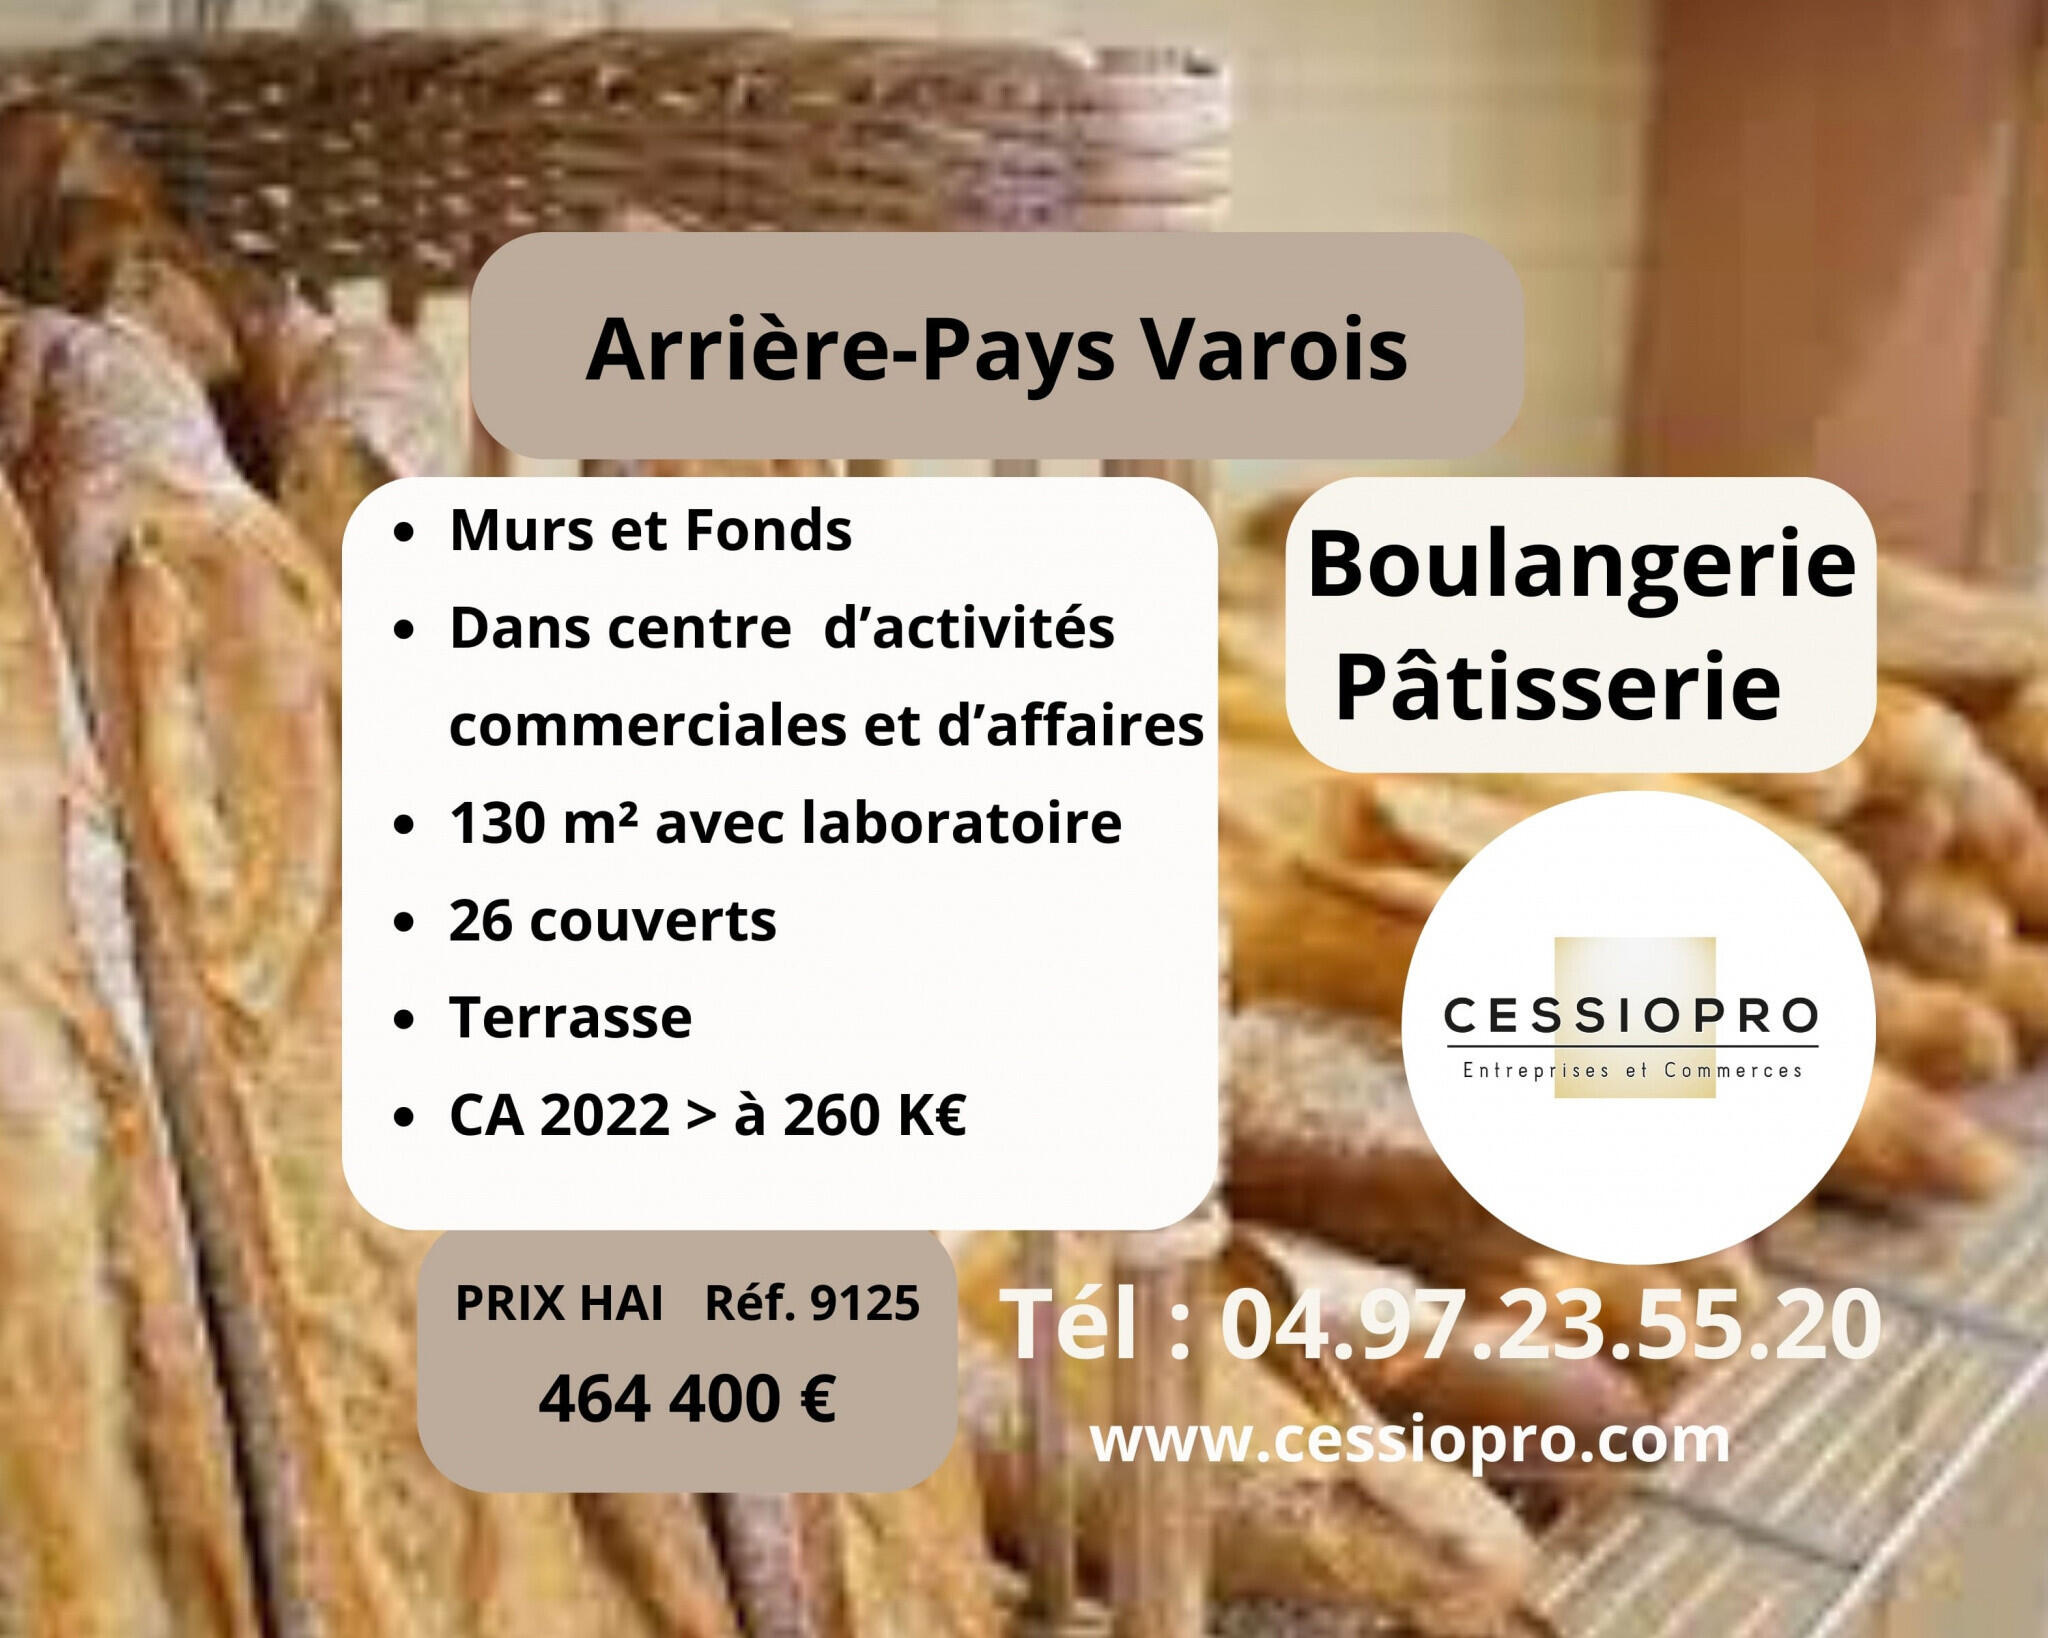 Vend boulangerie pâtisserie terrasse à Montauroux